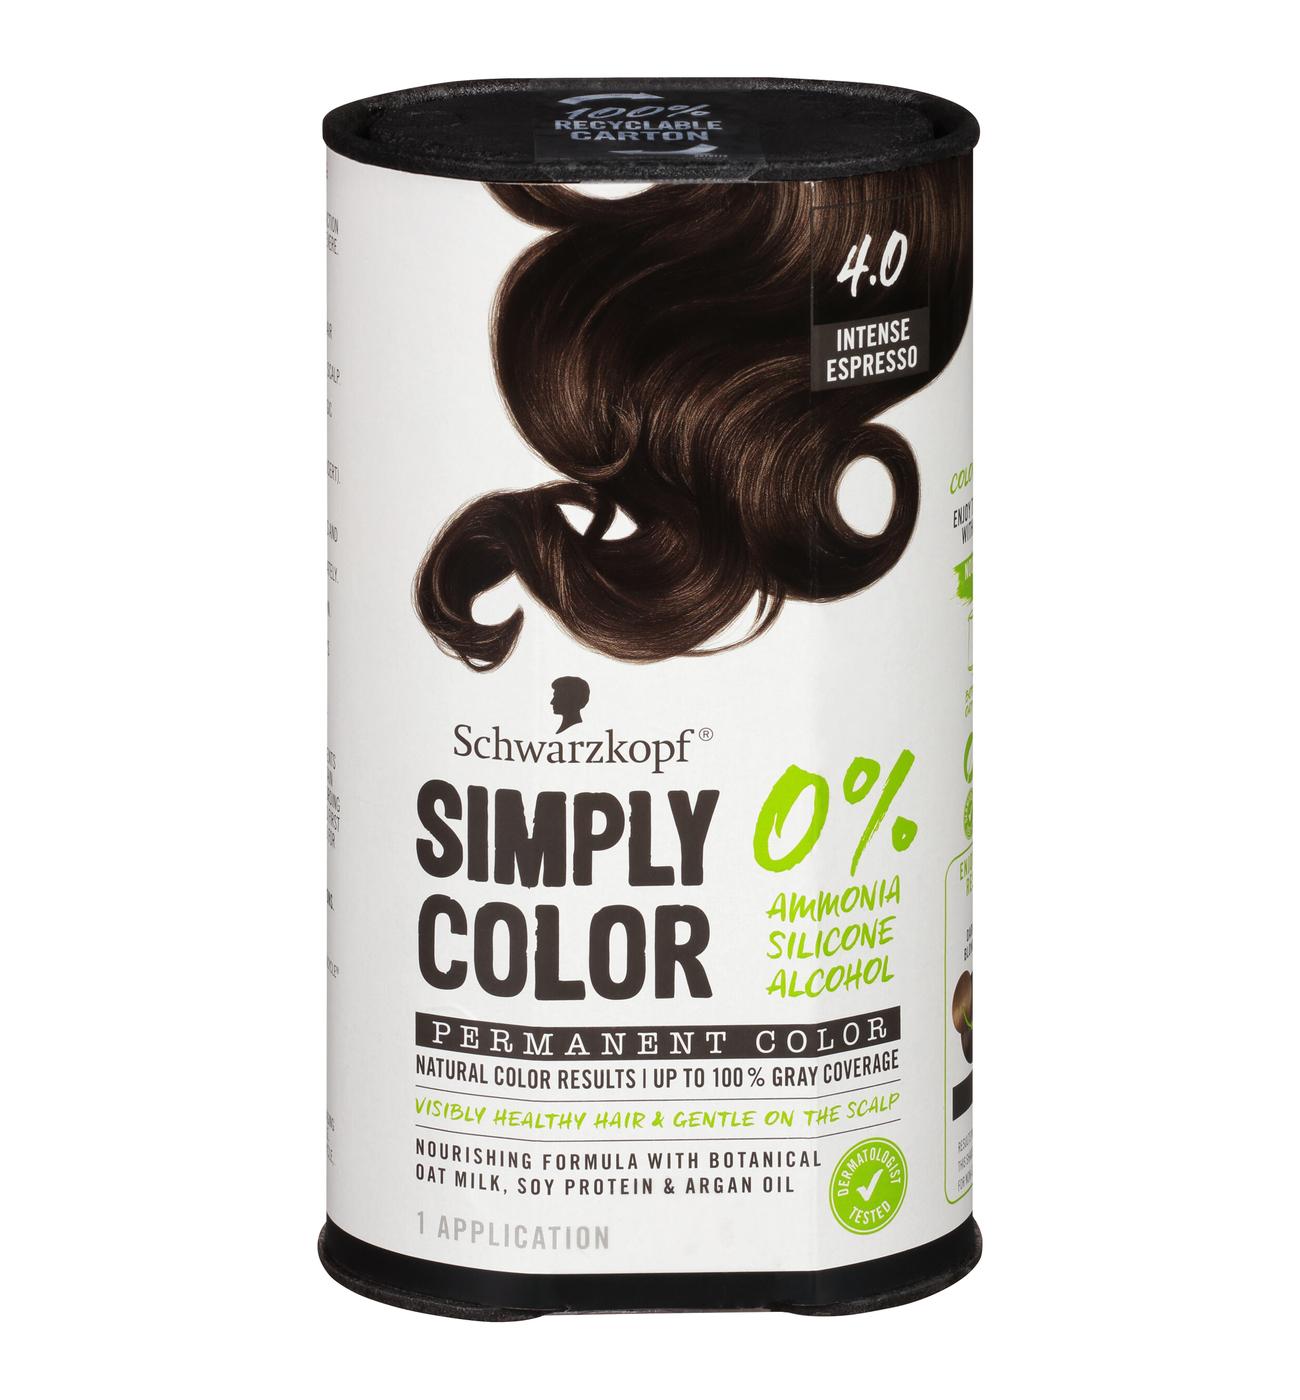 Schwarzkopf Simply Color Permanent Hair Color - 4.0 Intense Espresso; image 1 of 7